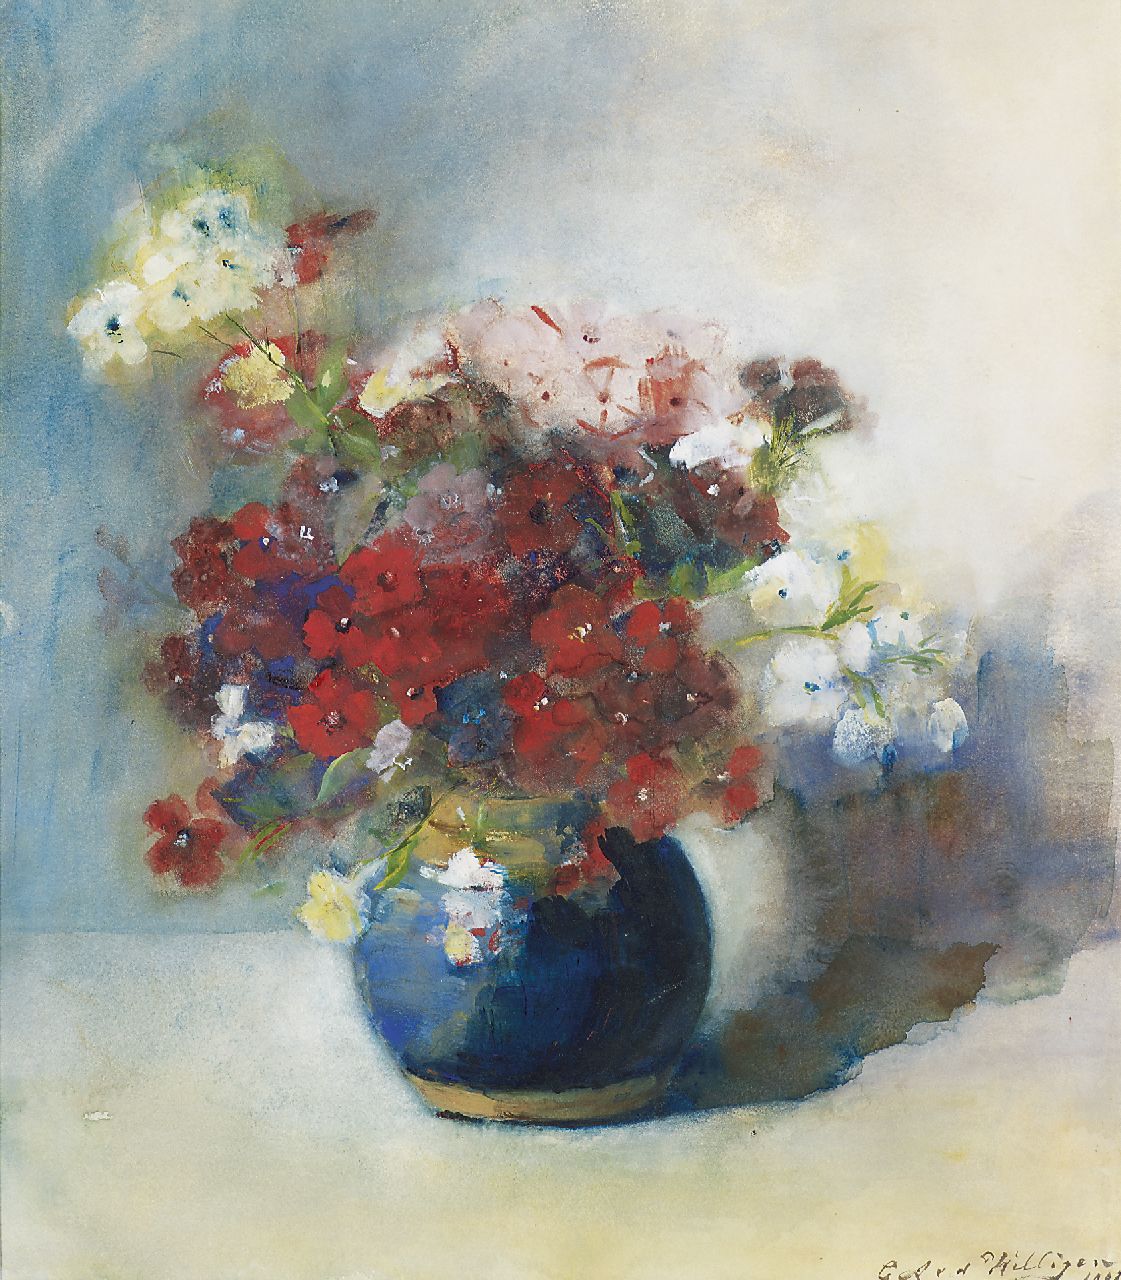 Willigen C.A. van der | Christina Abigael 'Chrisje' van der Willigen, Bloemen in blauwe pot, aquarel op papier 42,0 x 37,5 cm, gesigneerd rechtsonder en gedateerd 1902